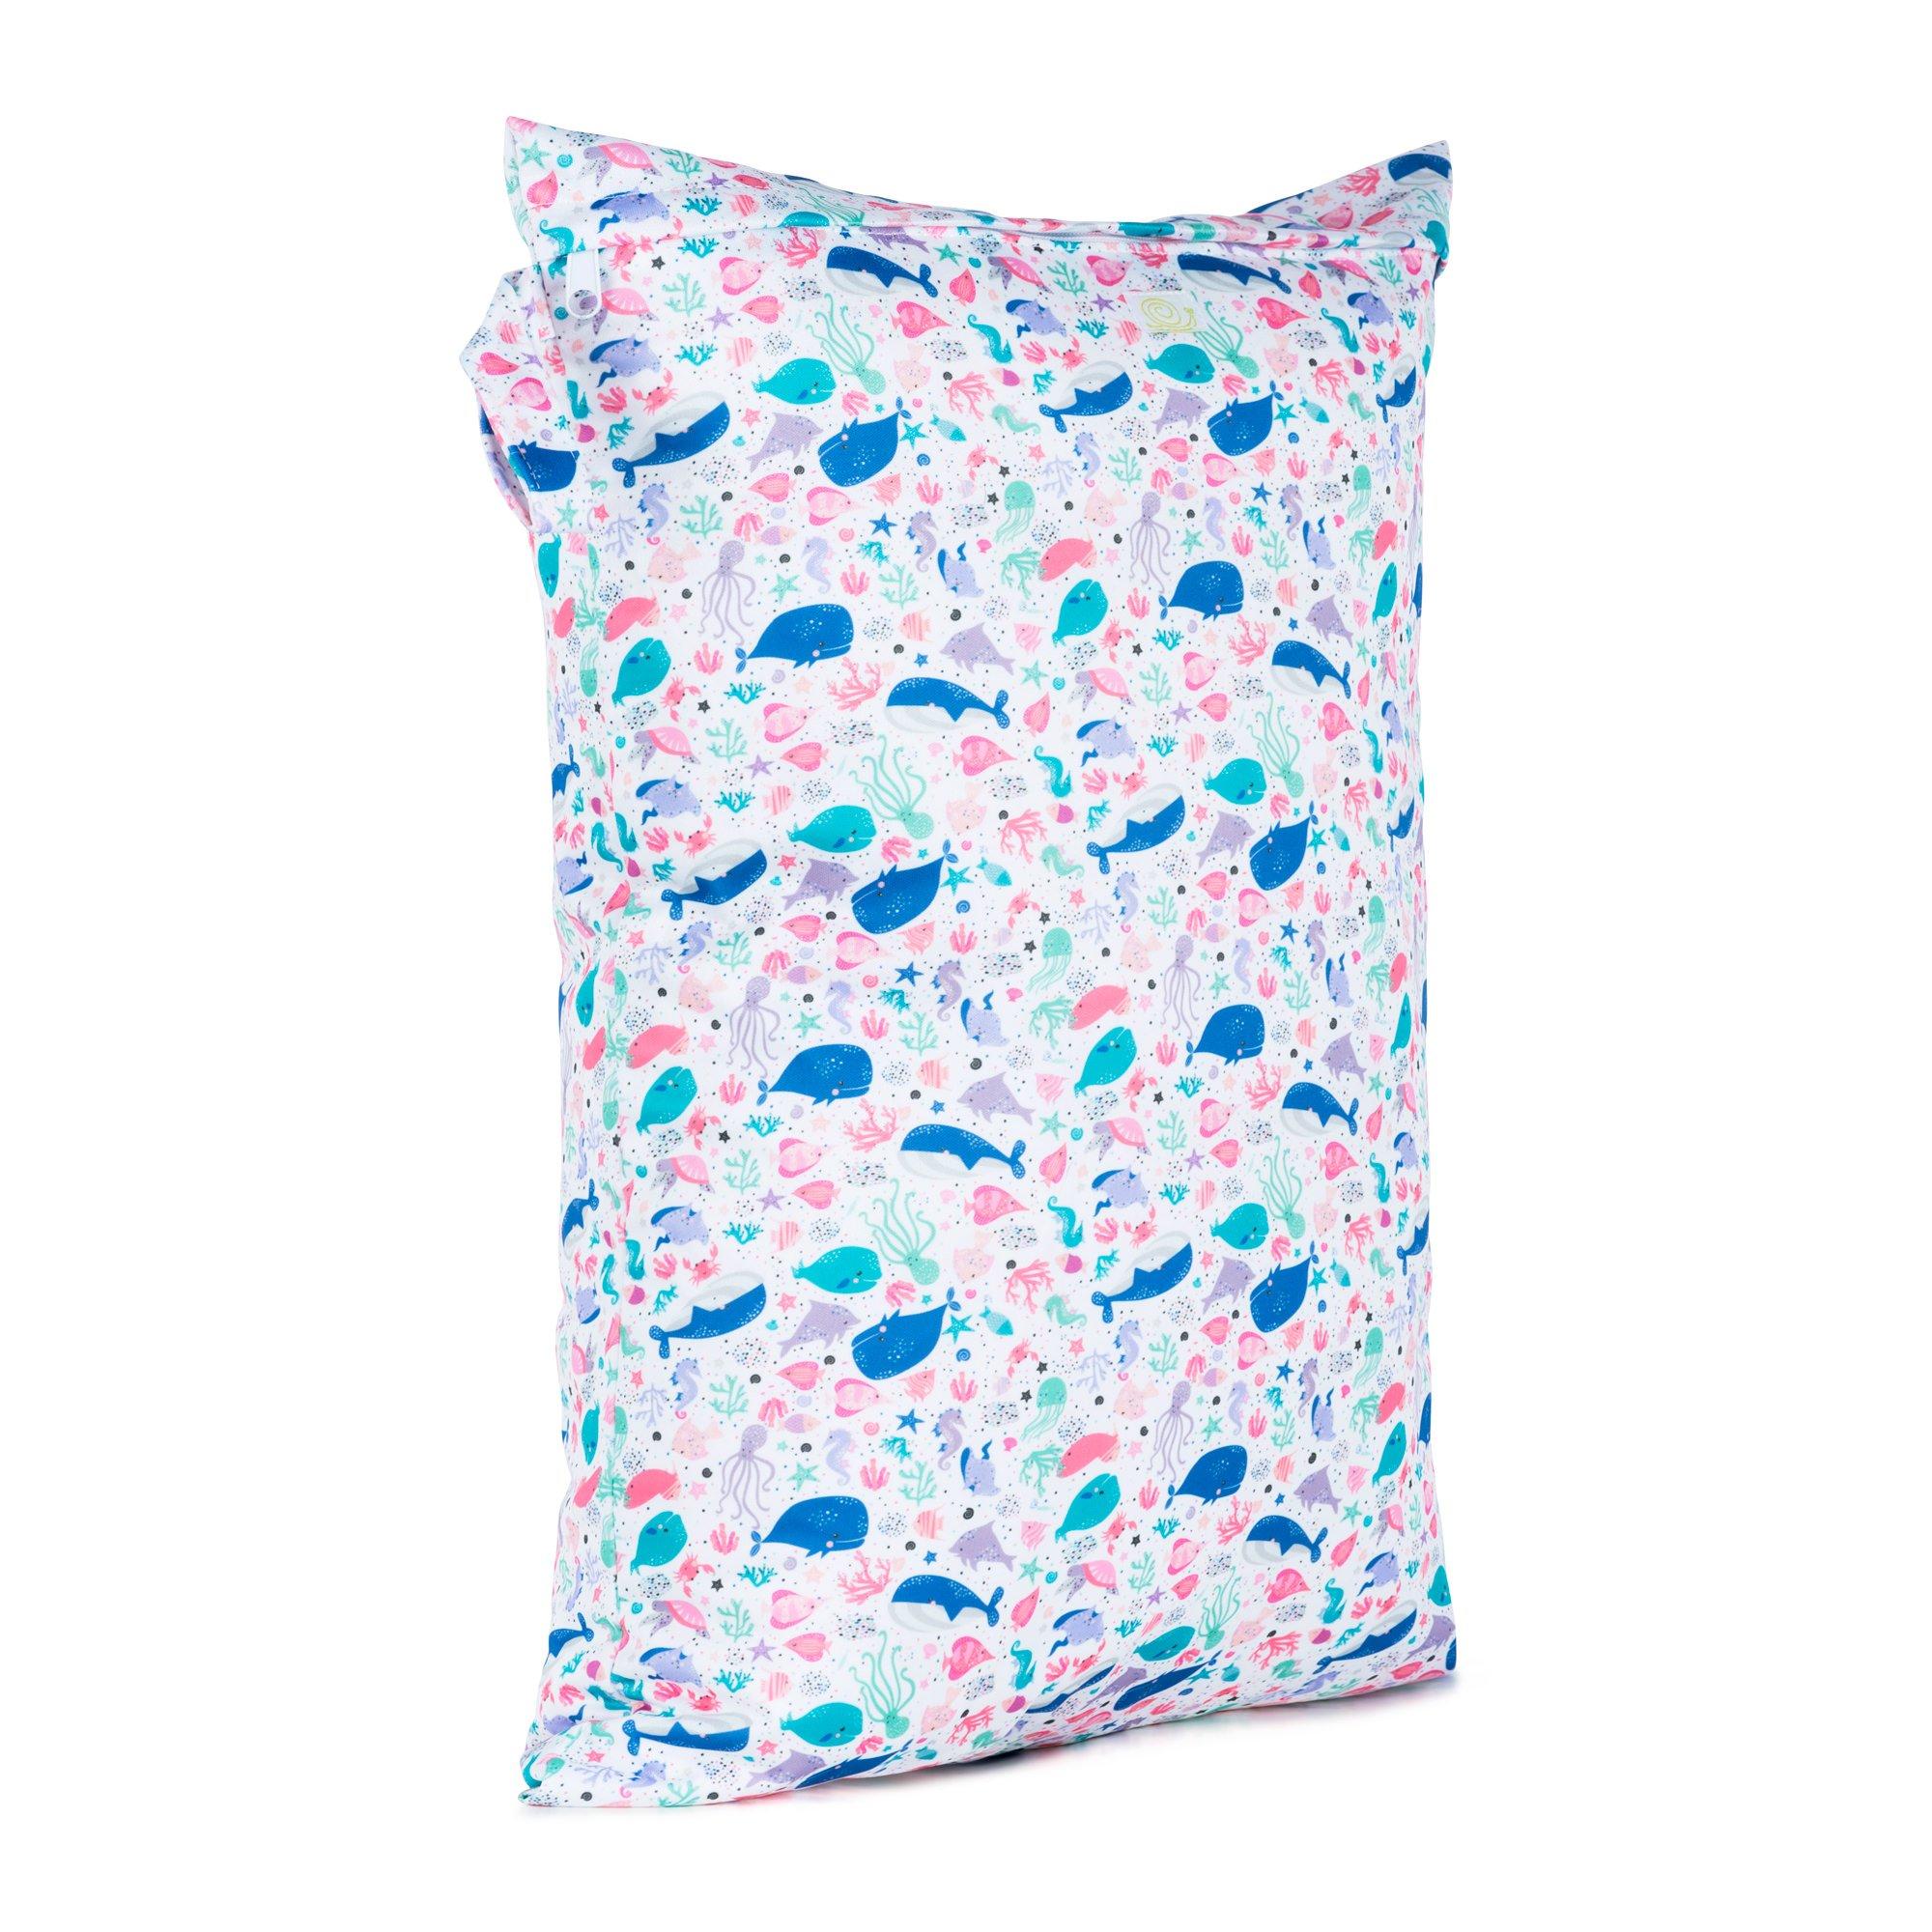 image of wet bag in oceans print